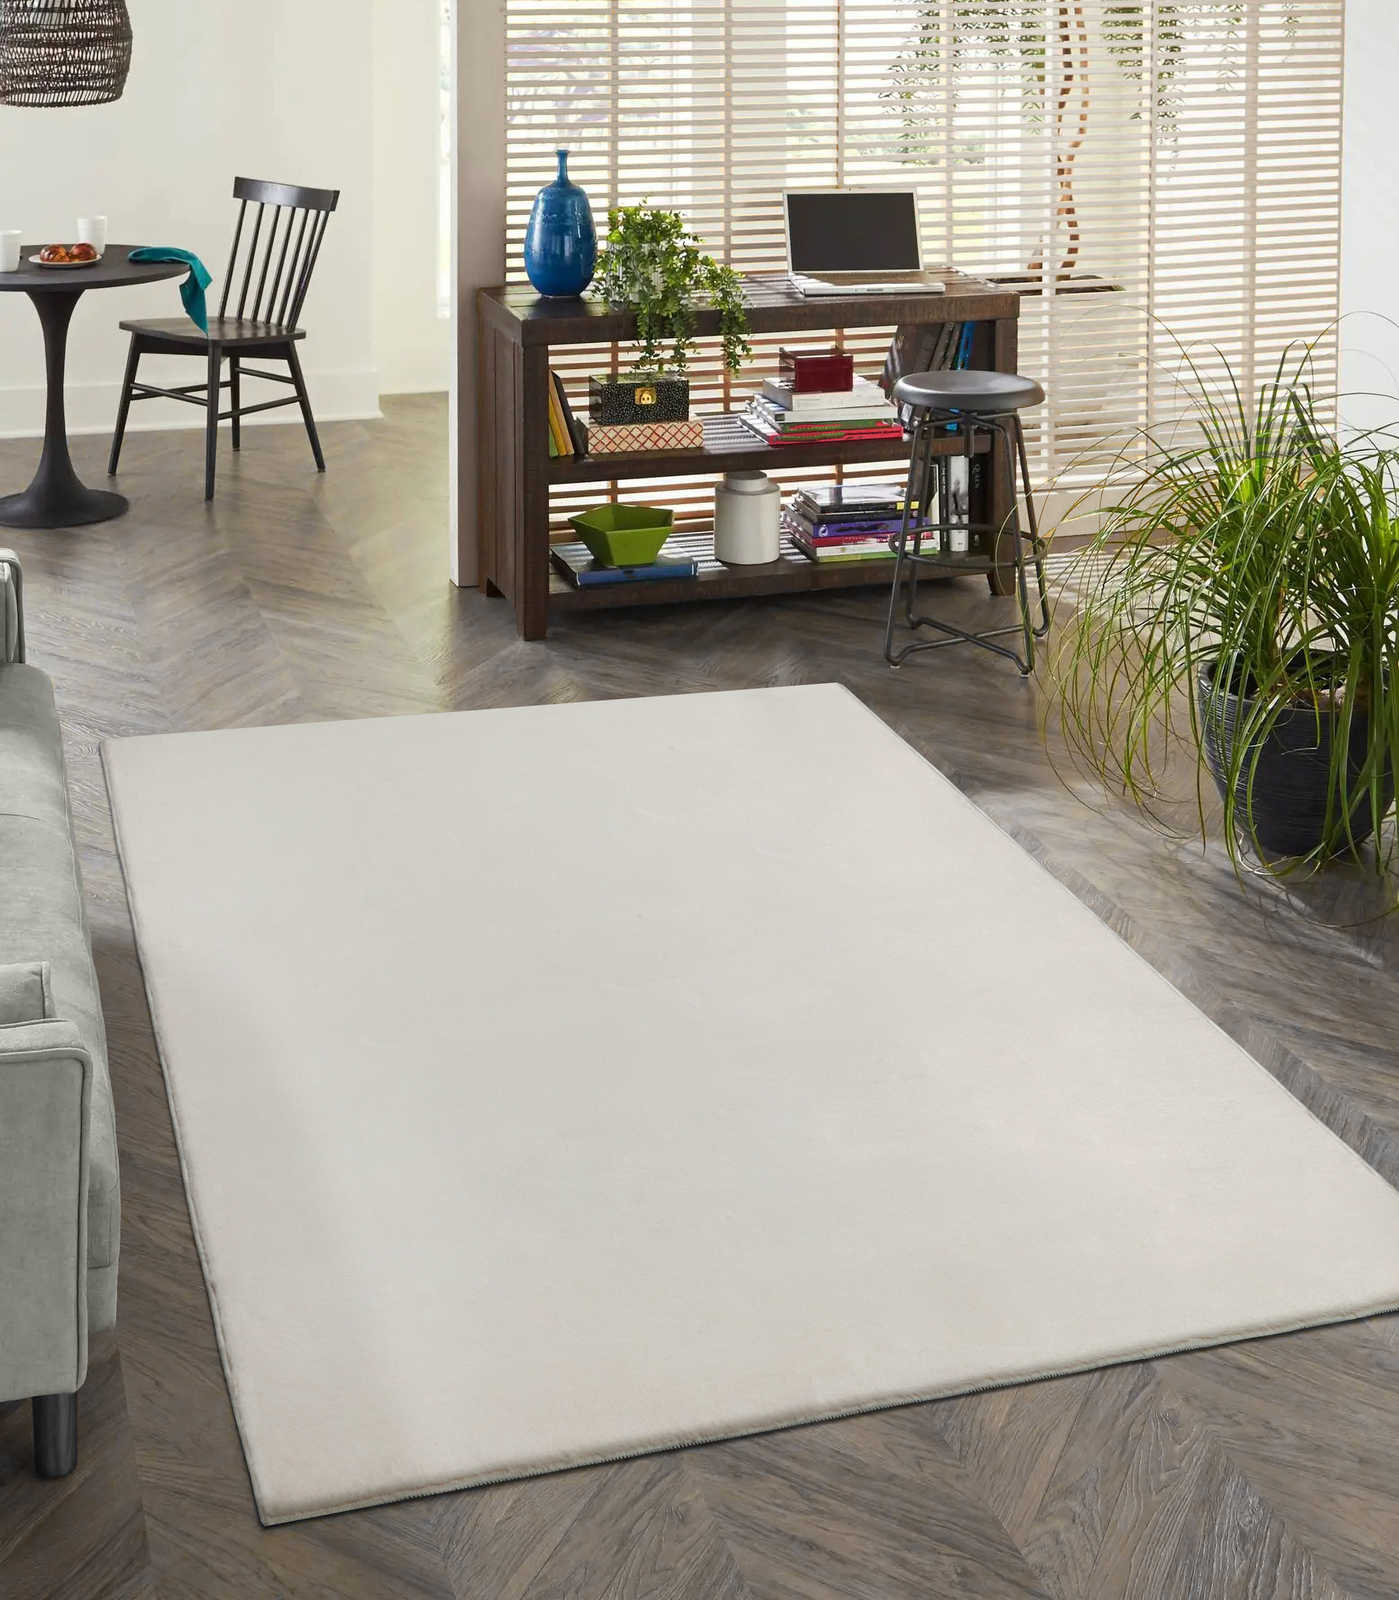 Soft pile carpet in cream - 100 x 50 cm
